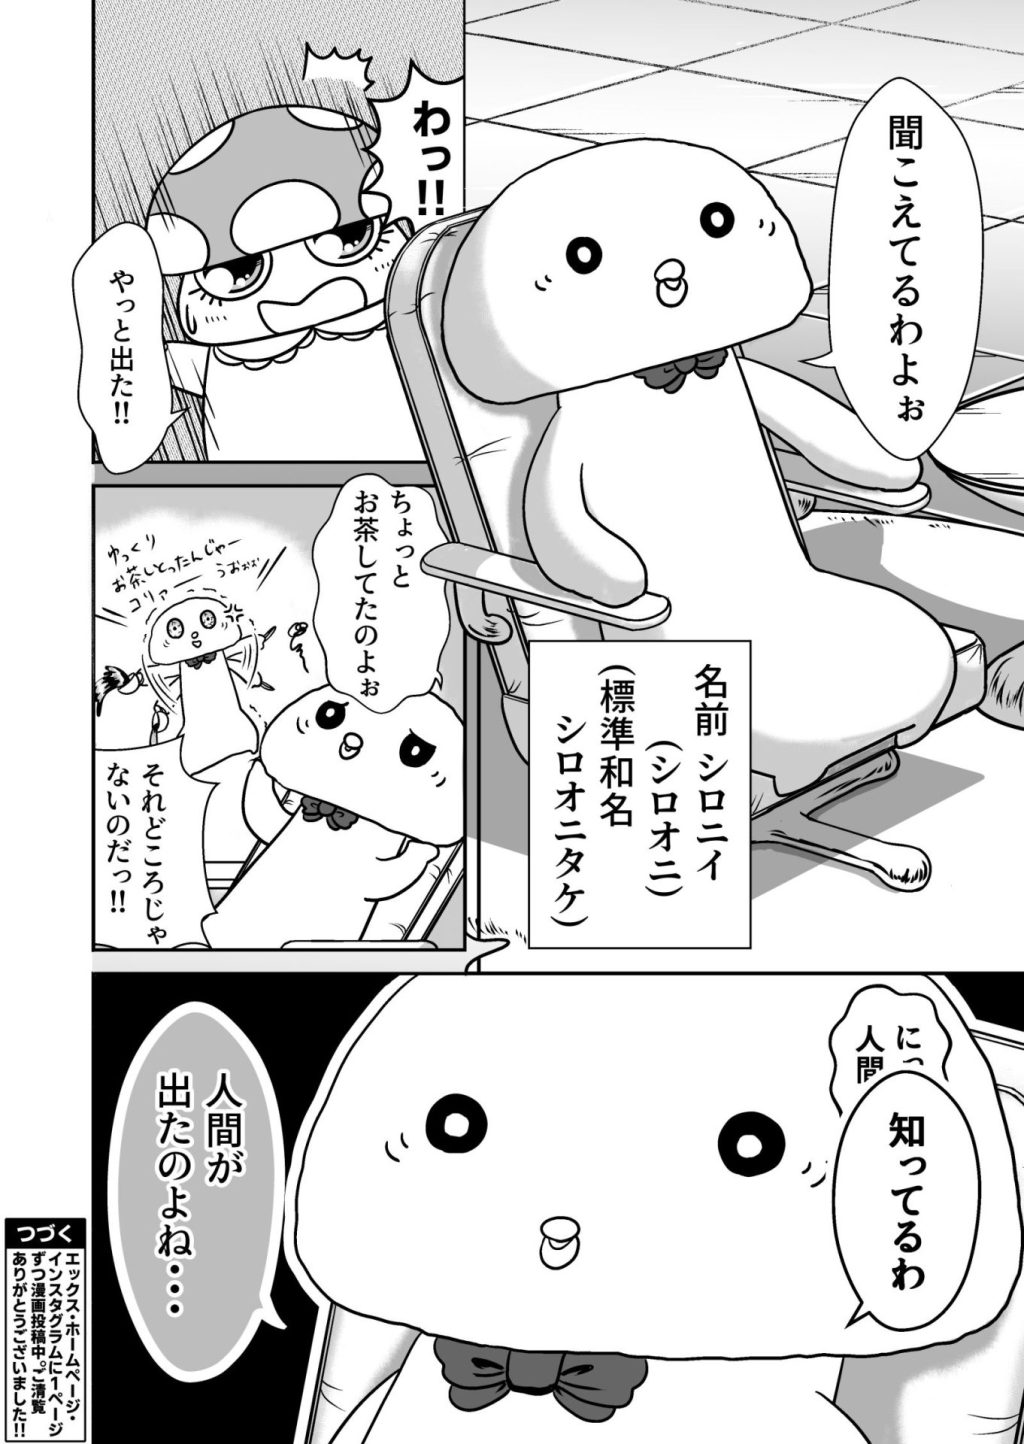 無料Web漫画、きのこぶ!!(仮)の22ページ目